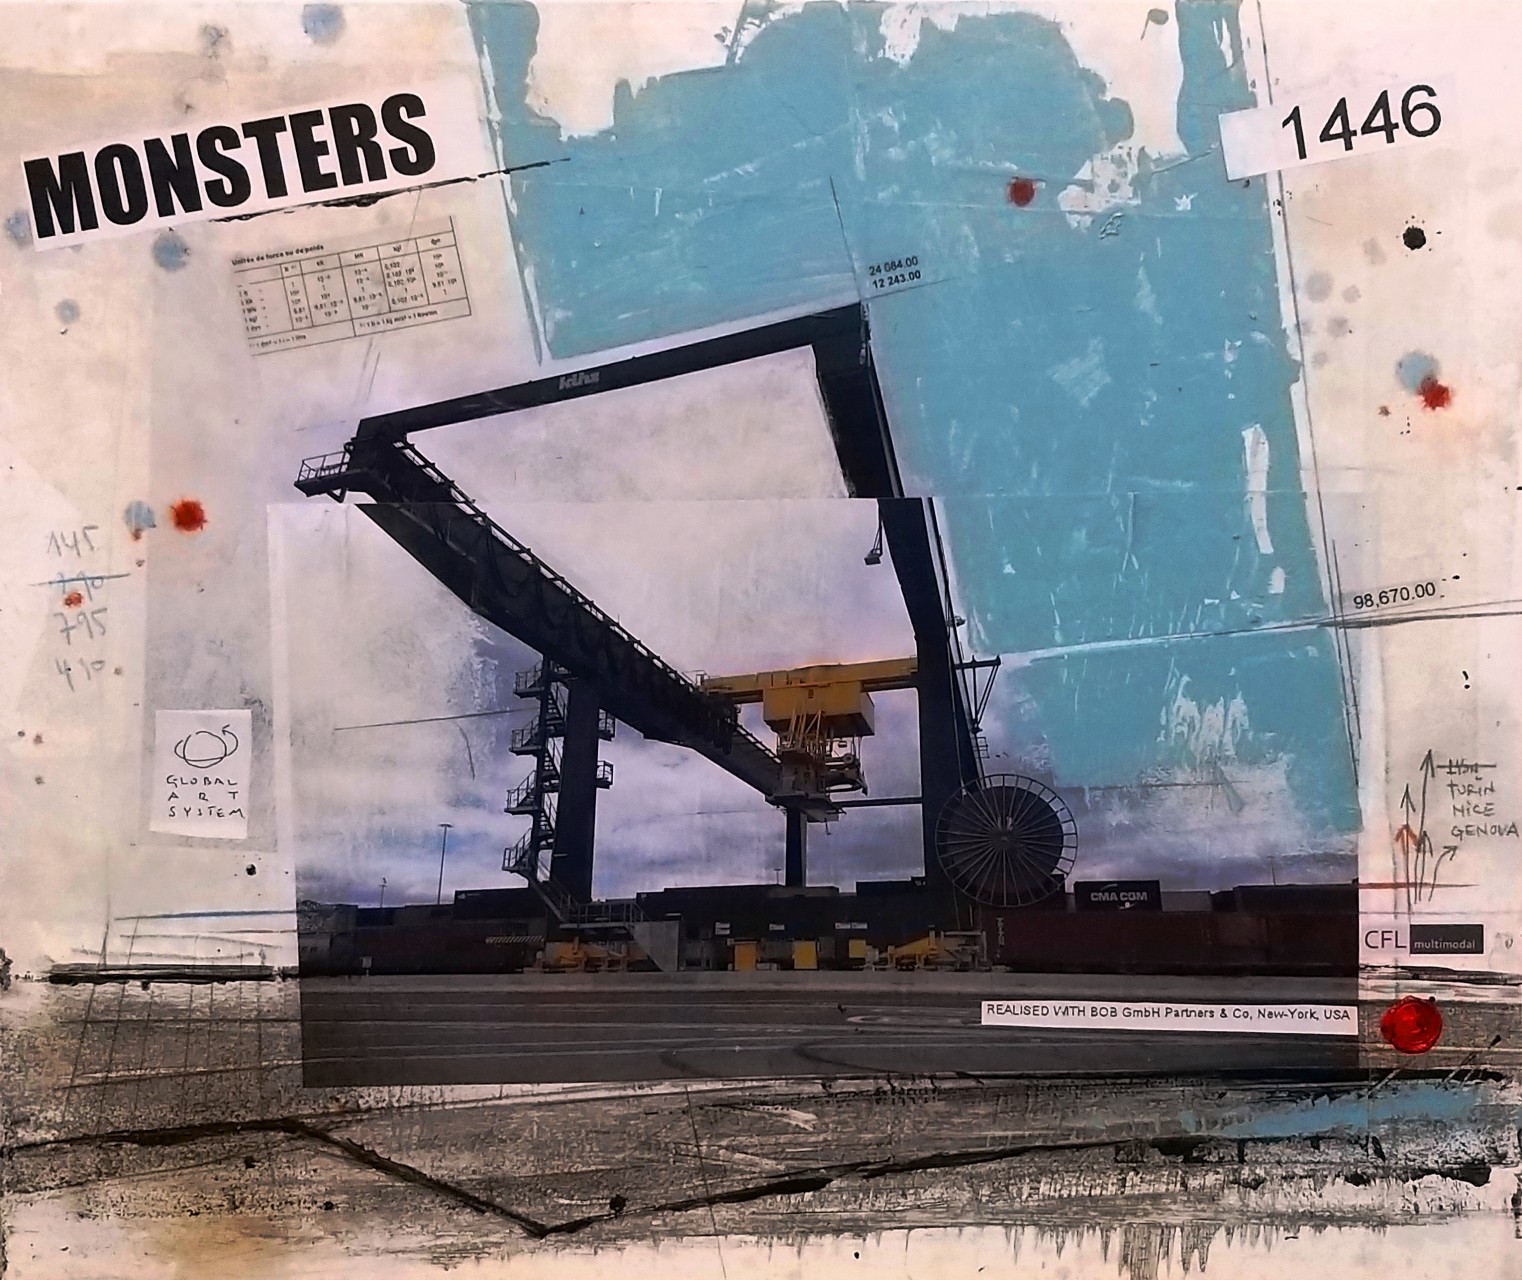 Monsters - CFL Multimodal / Dudelange (L) - collage photo, huile, acrylique sur toile - 50 x 60 cm - 2018